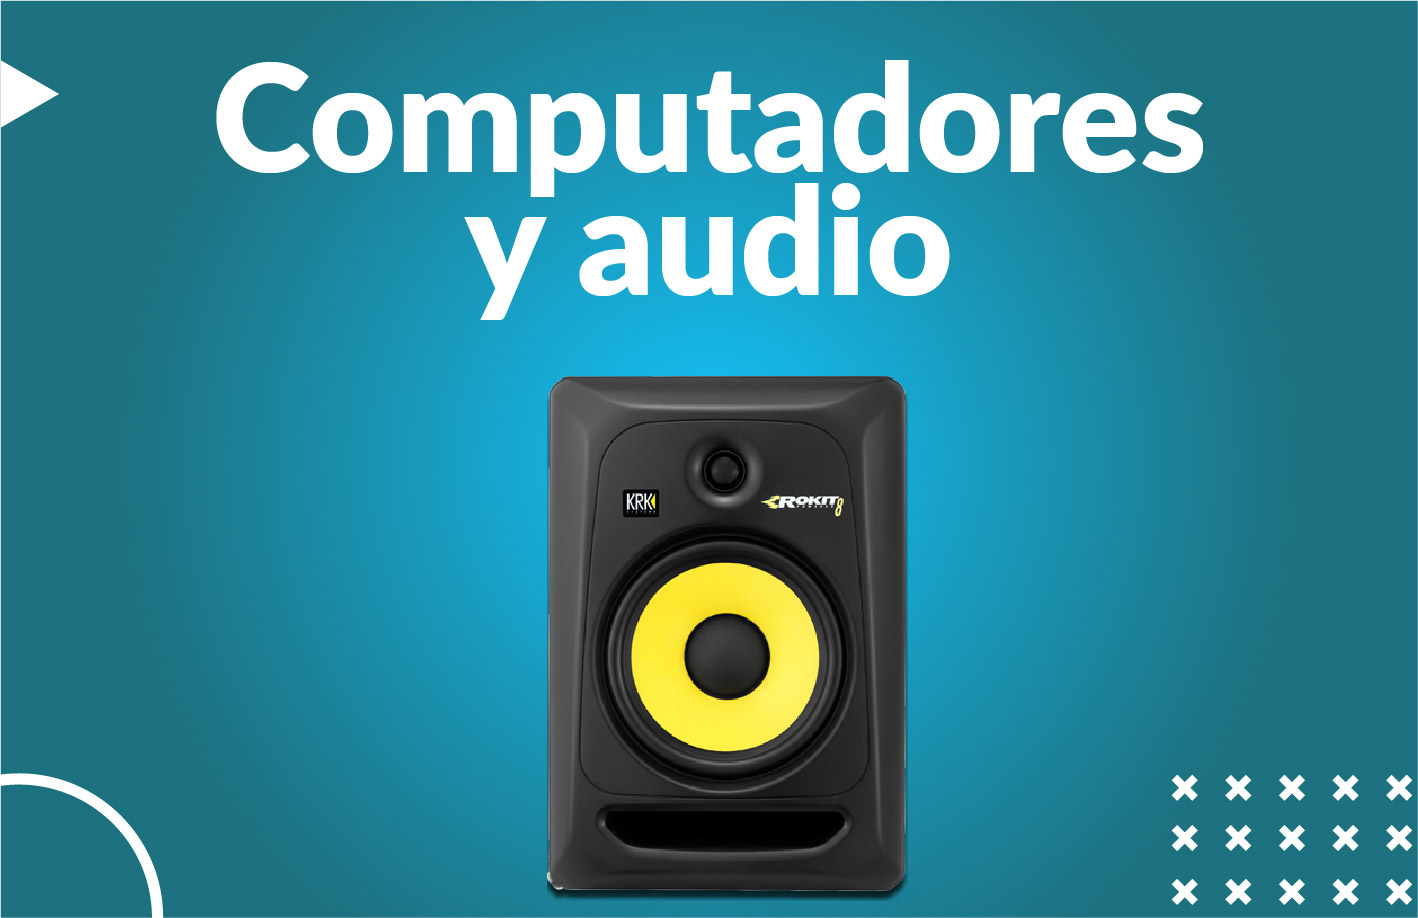 Computadores y audio Venezuela